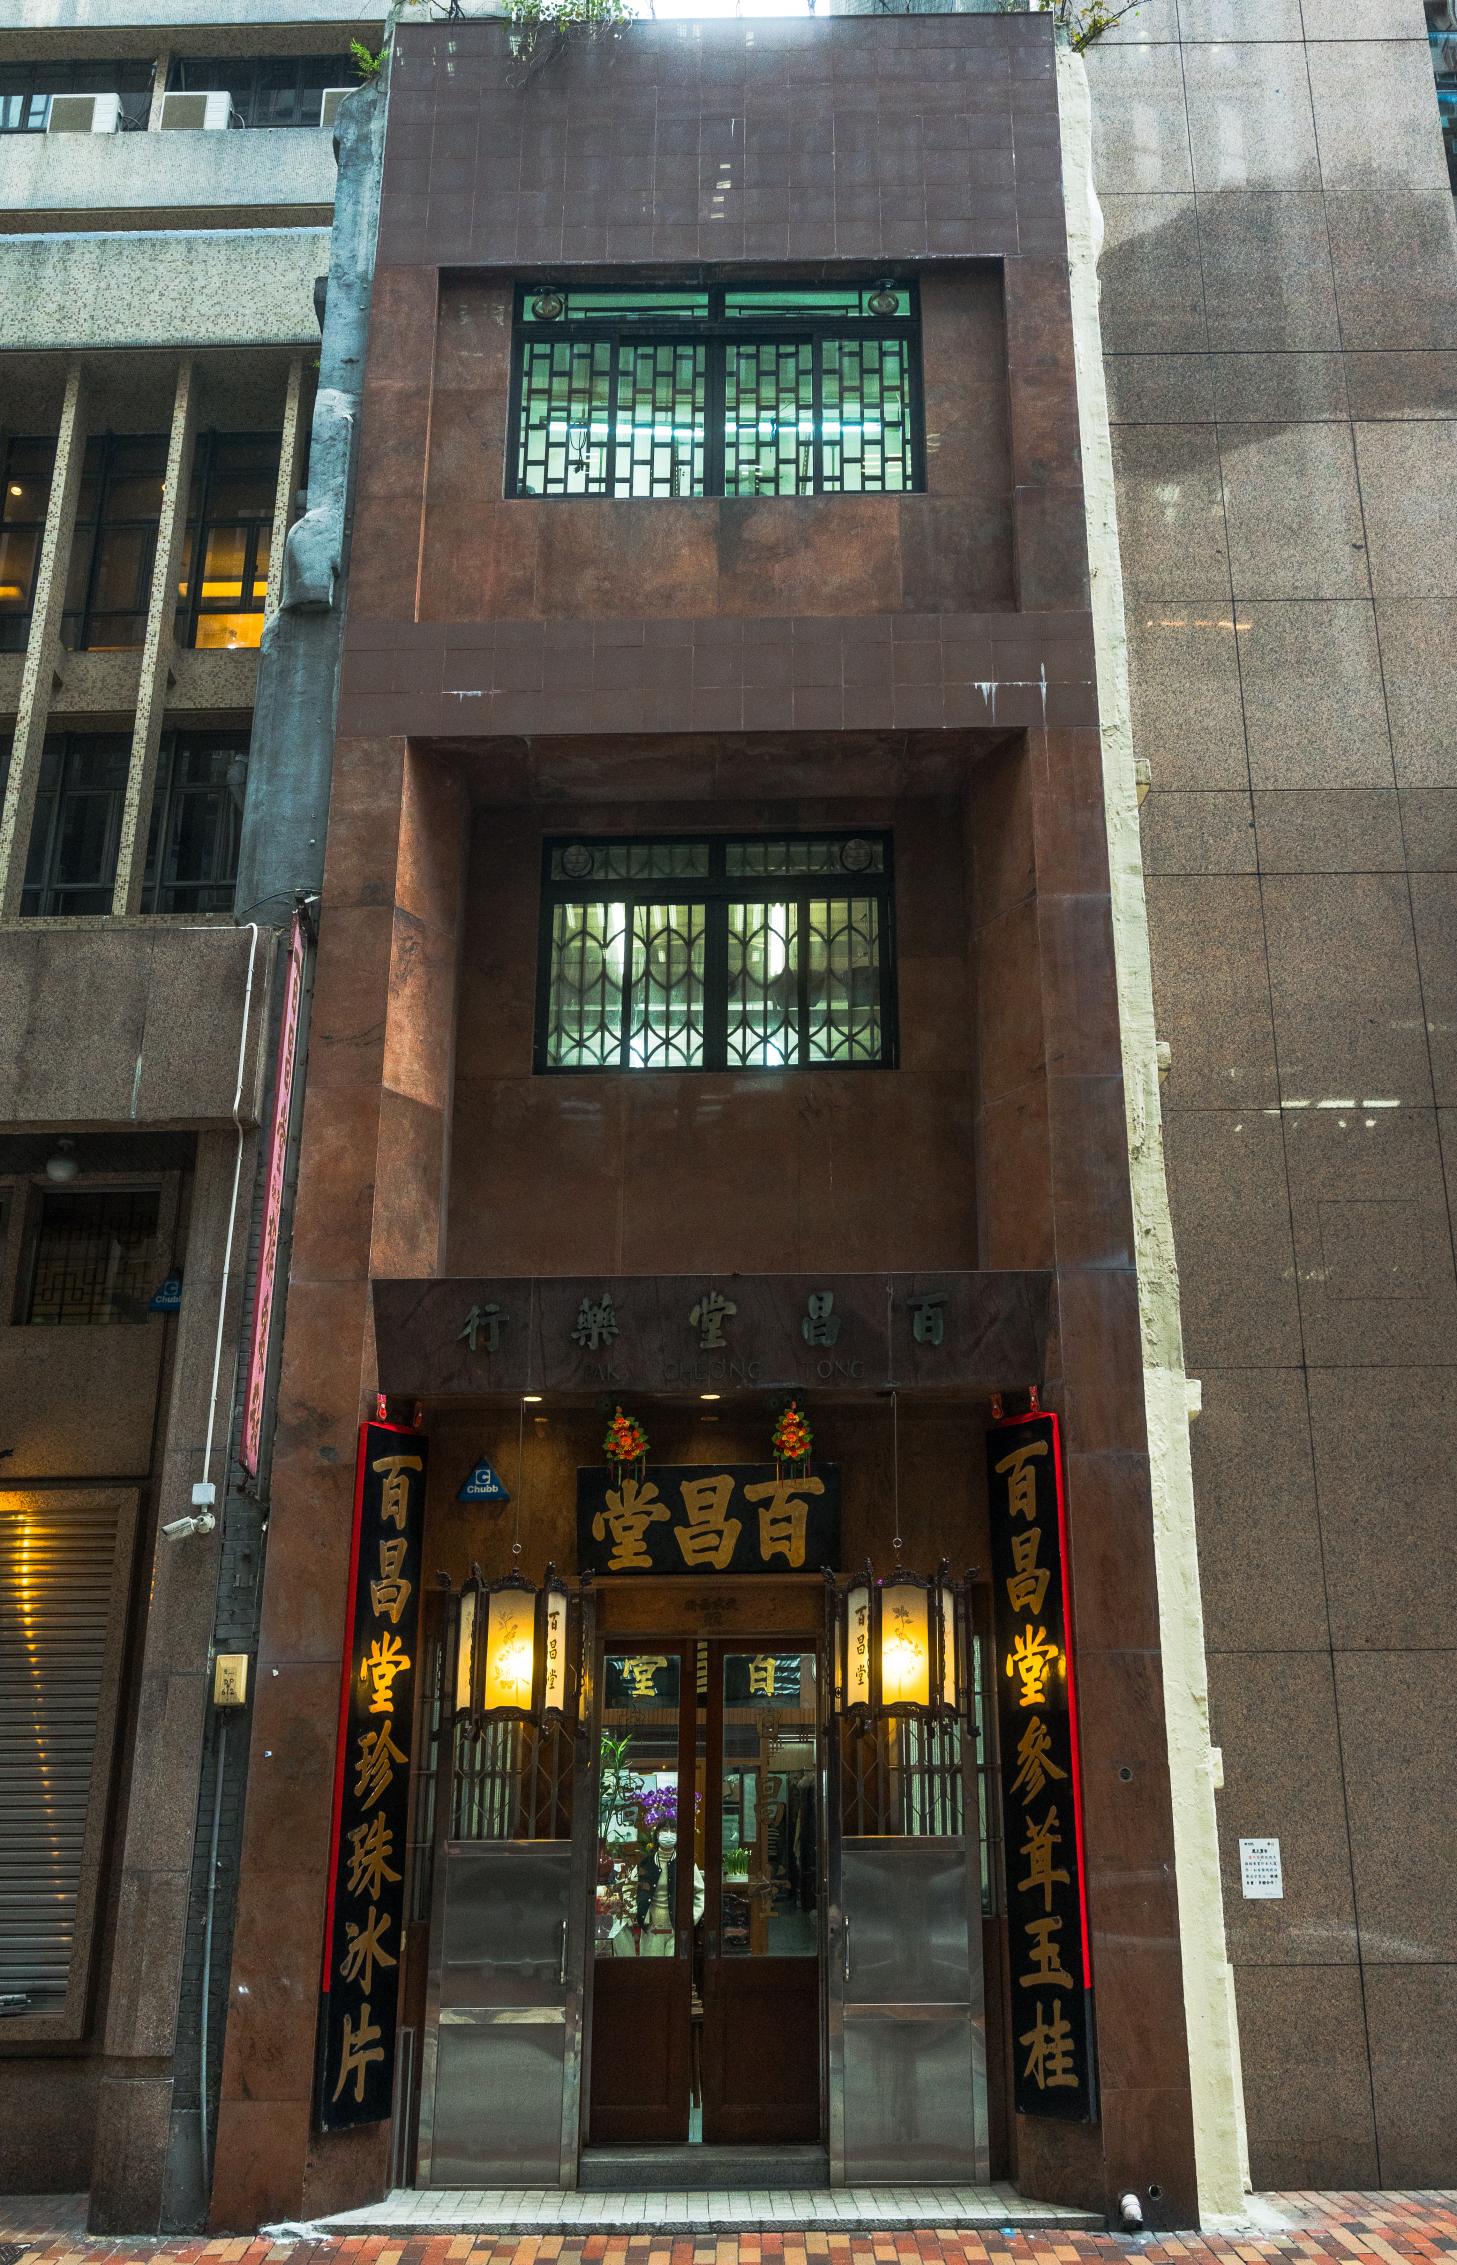 百昌堂樓高三層、混合中西風格，門口簪花掛紅黑底金漆招牌，左右相對的牌匾記錄了百昌堂主要售賣的中藥材。 